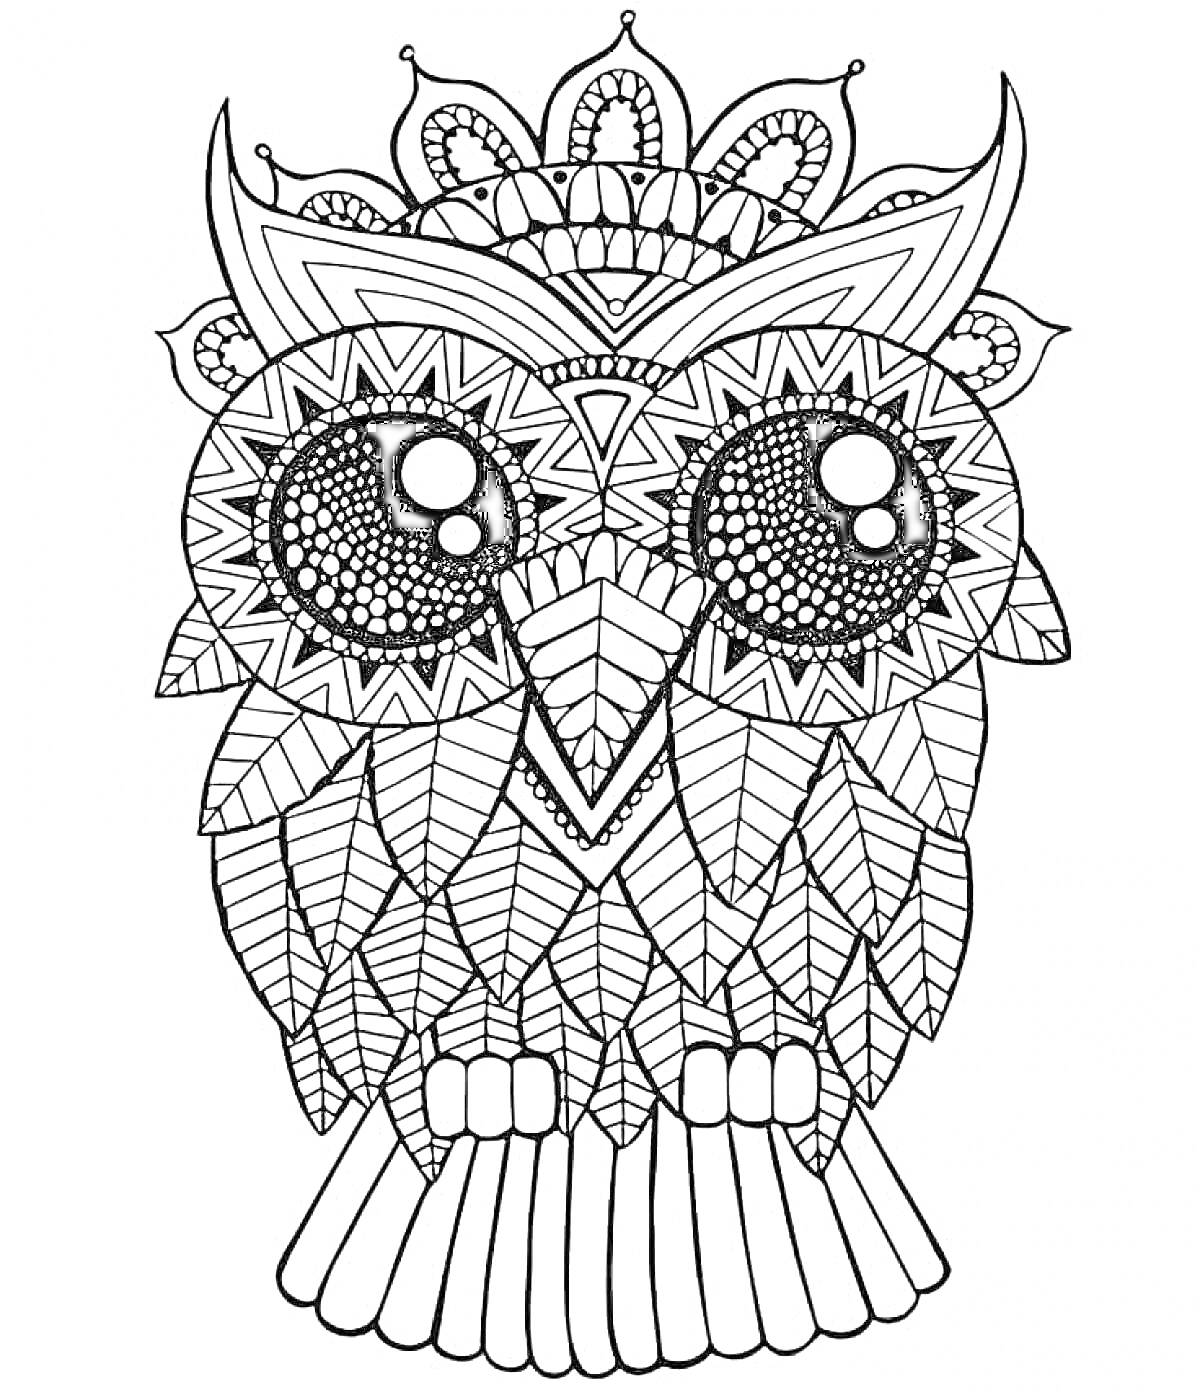 Раскраска Совушка с крупными глазами и геометрическими узорами